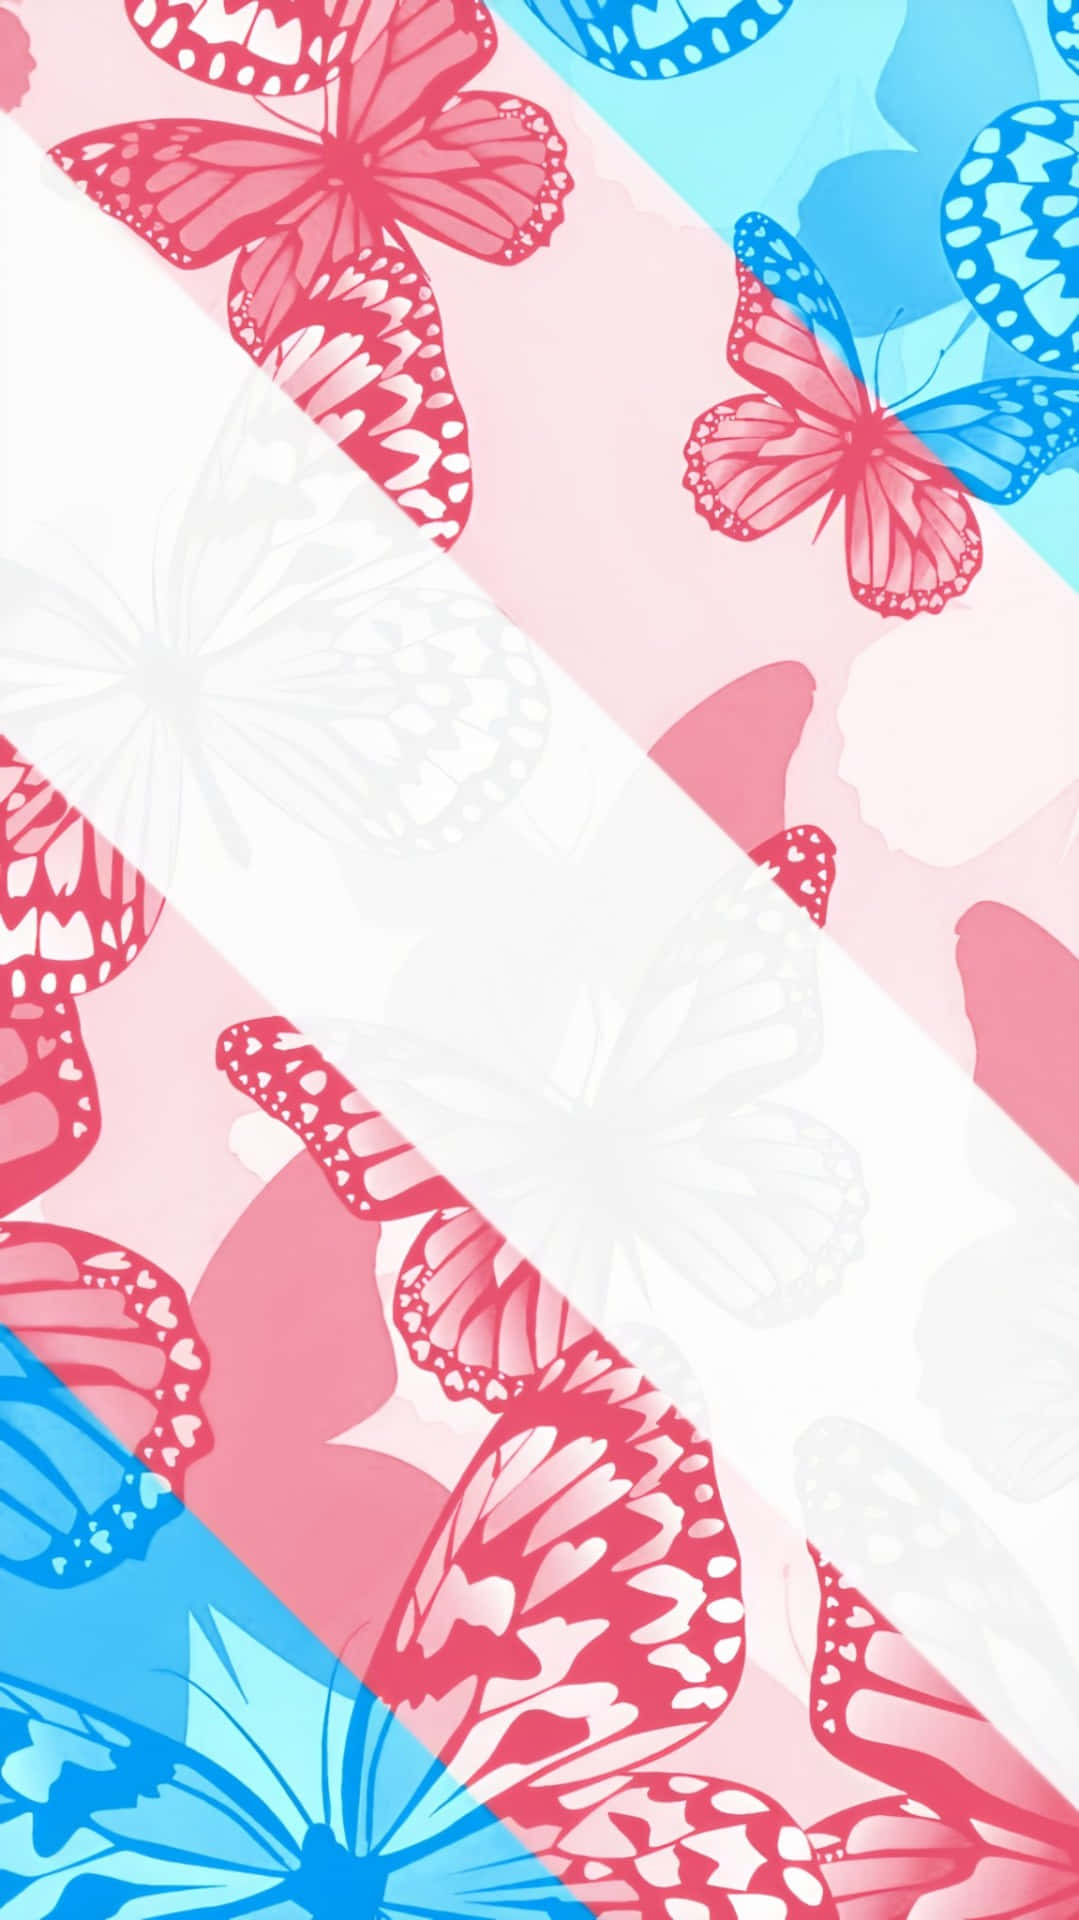 Einrosa Und Blau Gemustertes Schmetterlingsmuster Auf Einem Blauen Hintergrund Wallpaper